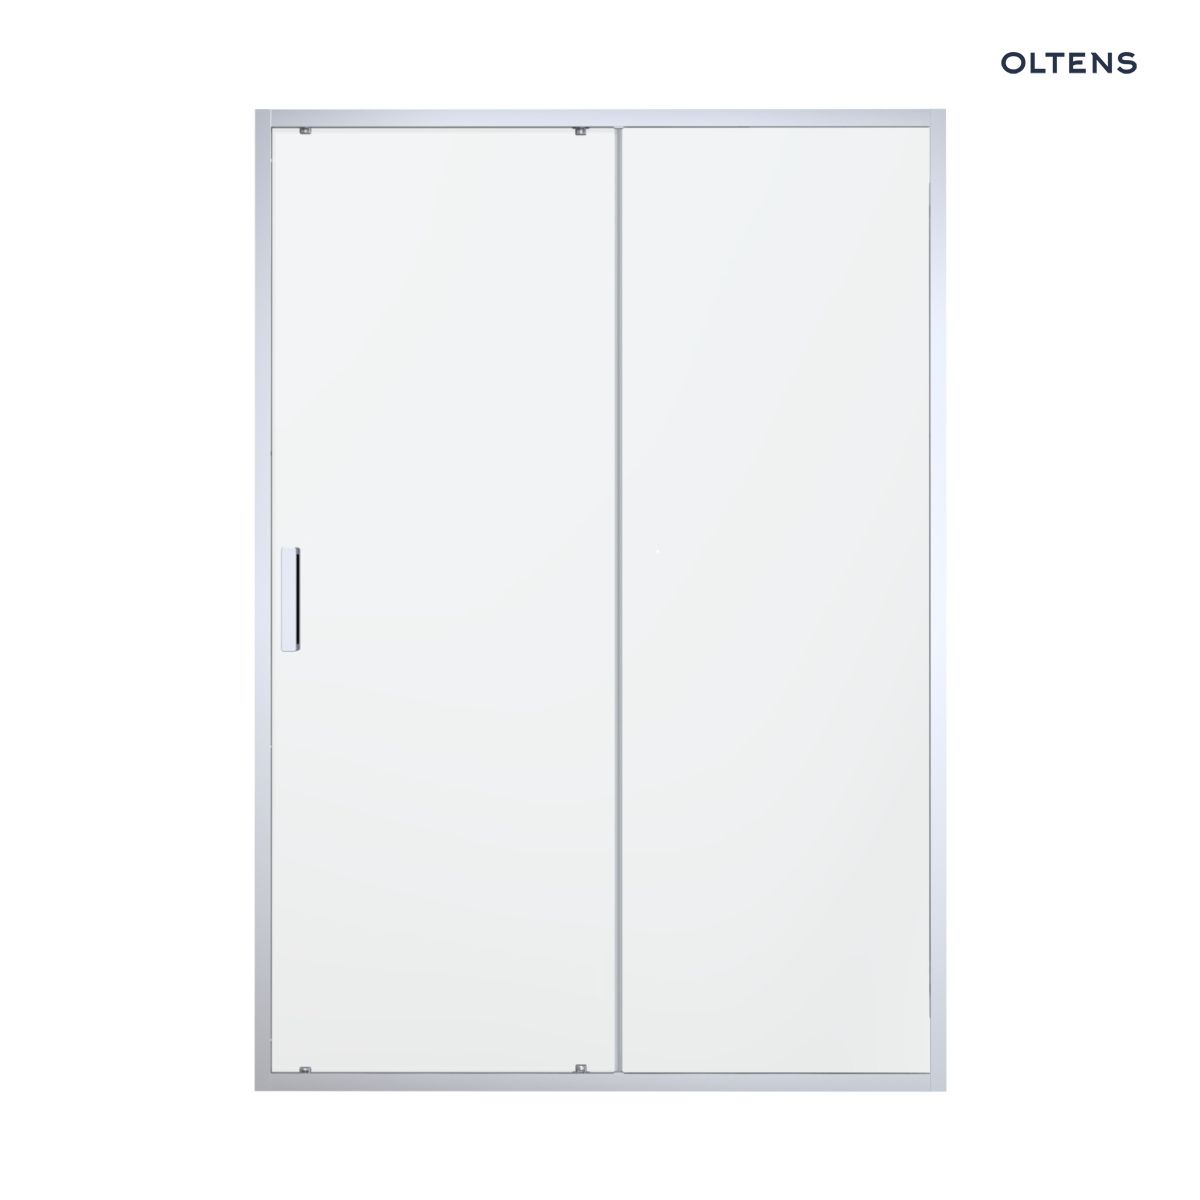 Oltens Fulla drzwi prysznicowe 120 cm wnękowe chrom błyszczący/szkło przezroczyste